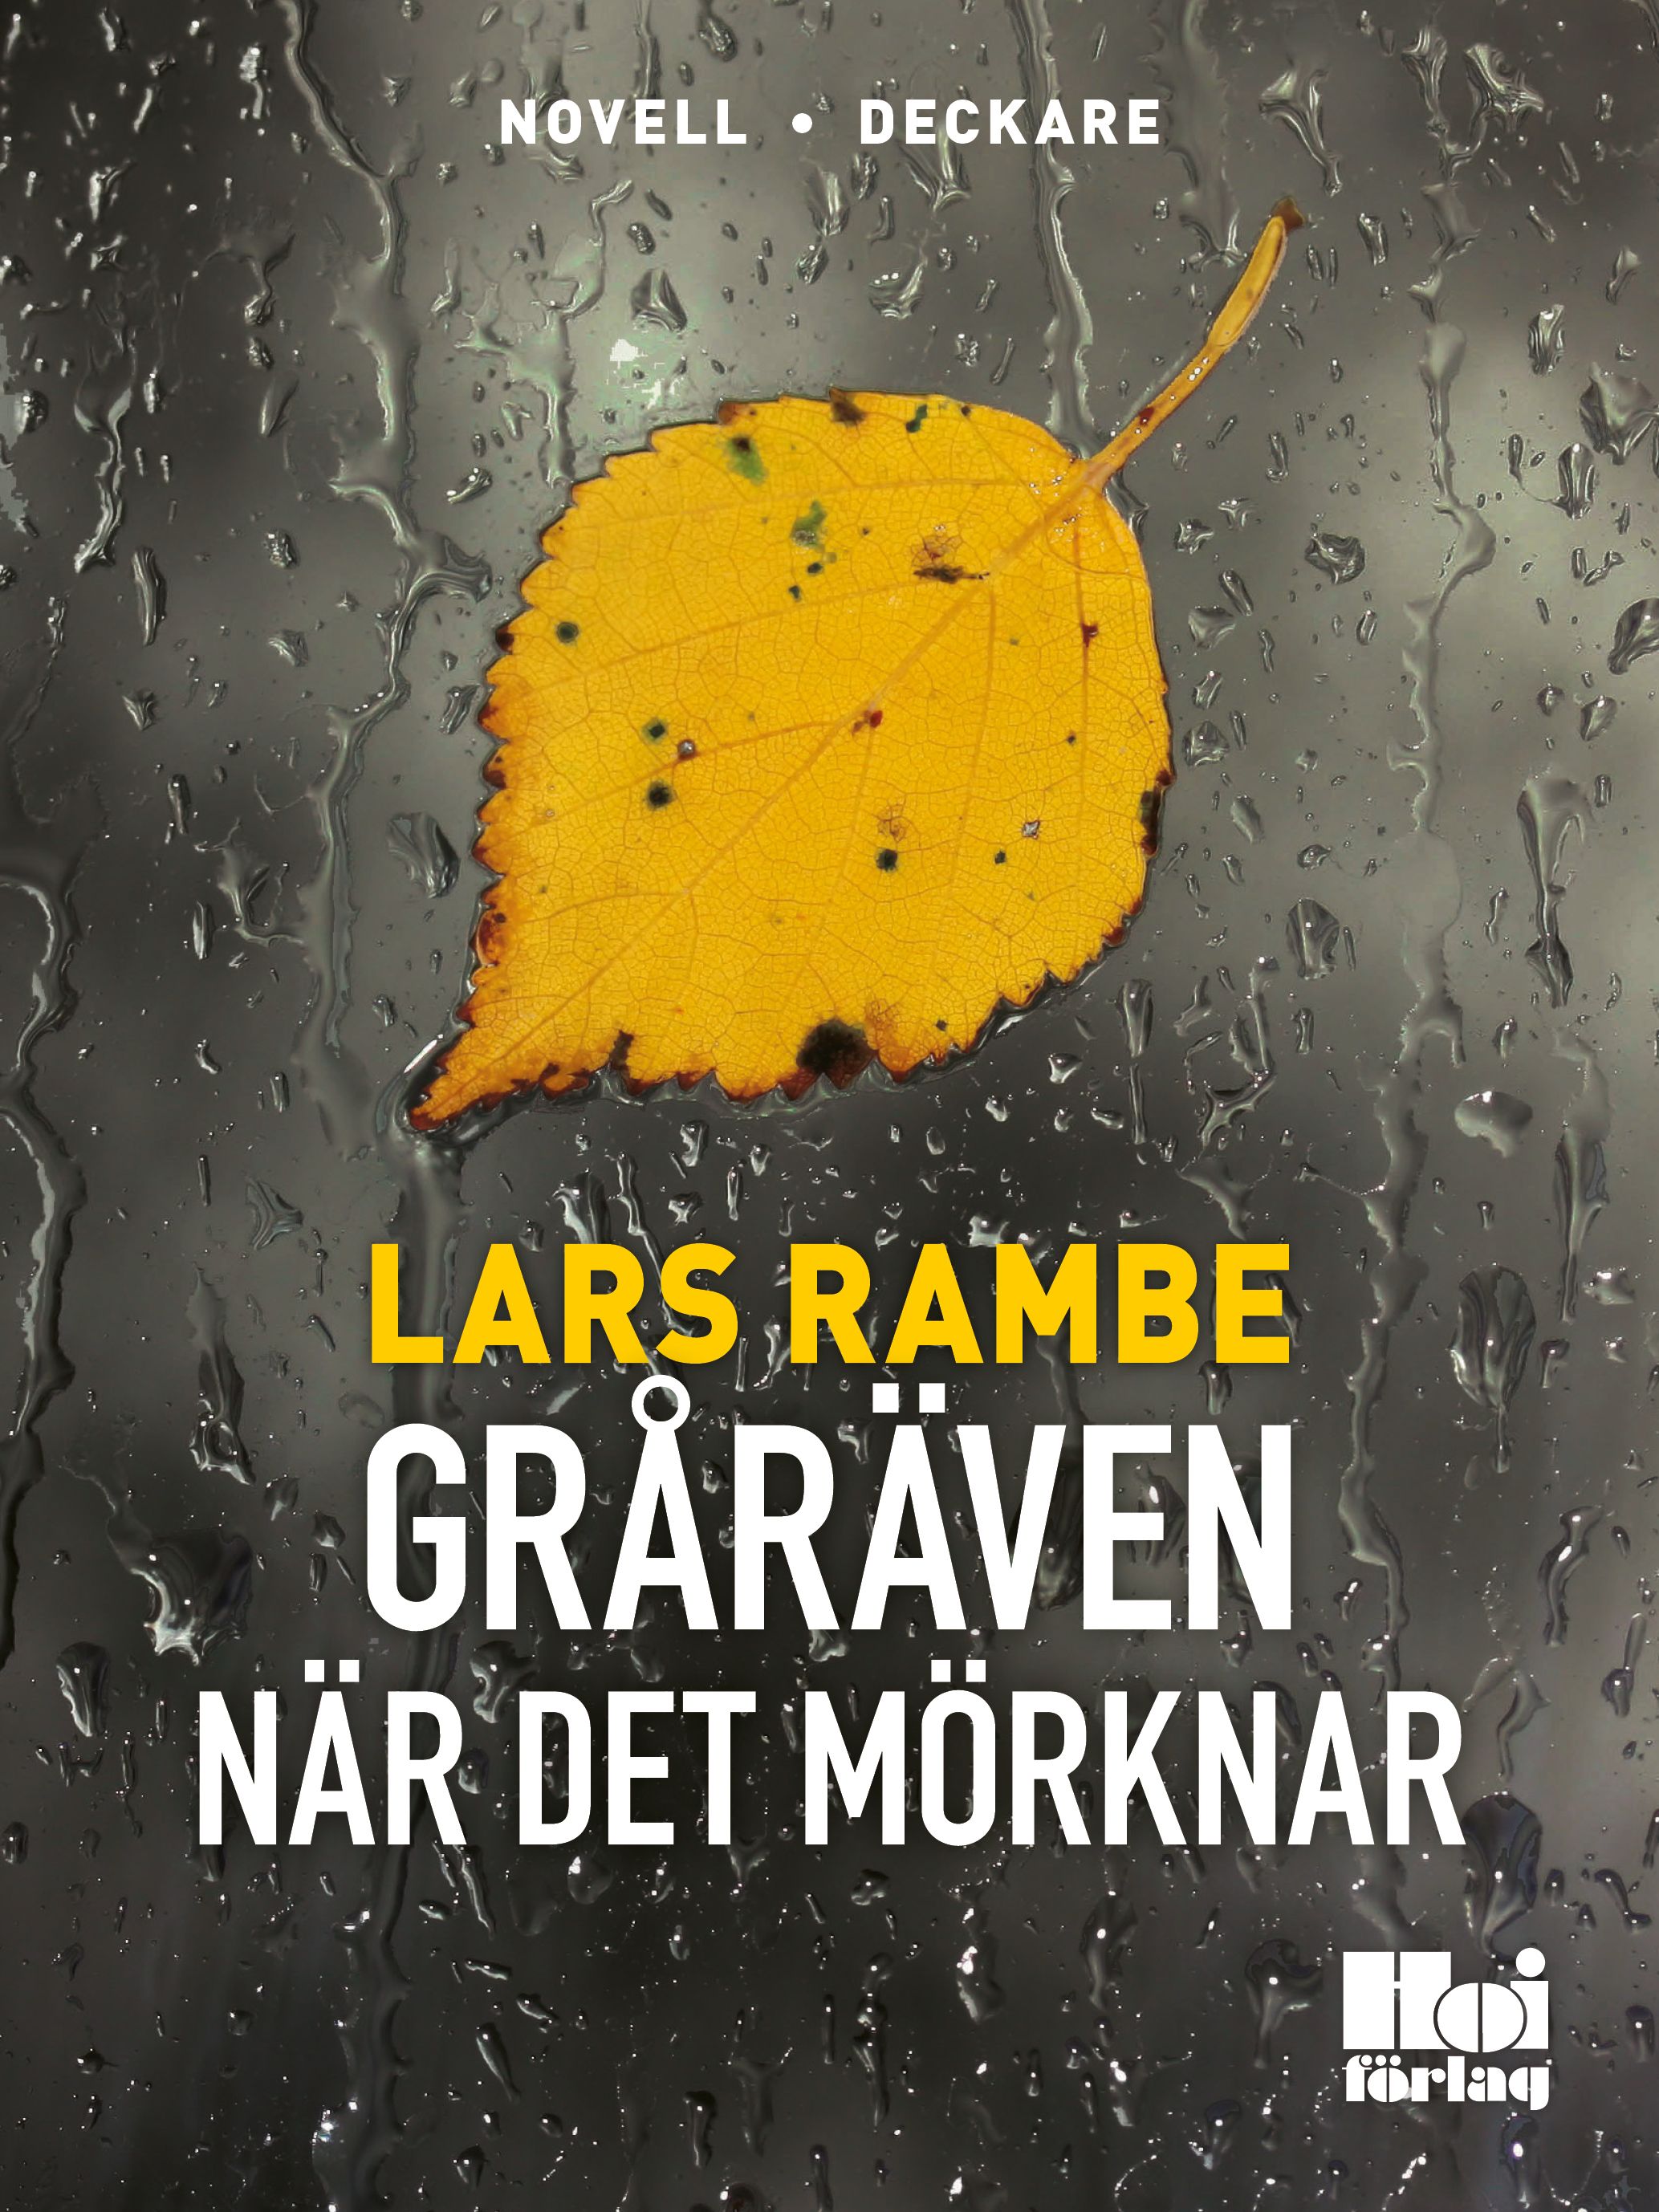 Gråräven - När det mörknar, eBook by Lars Rambe